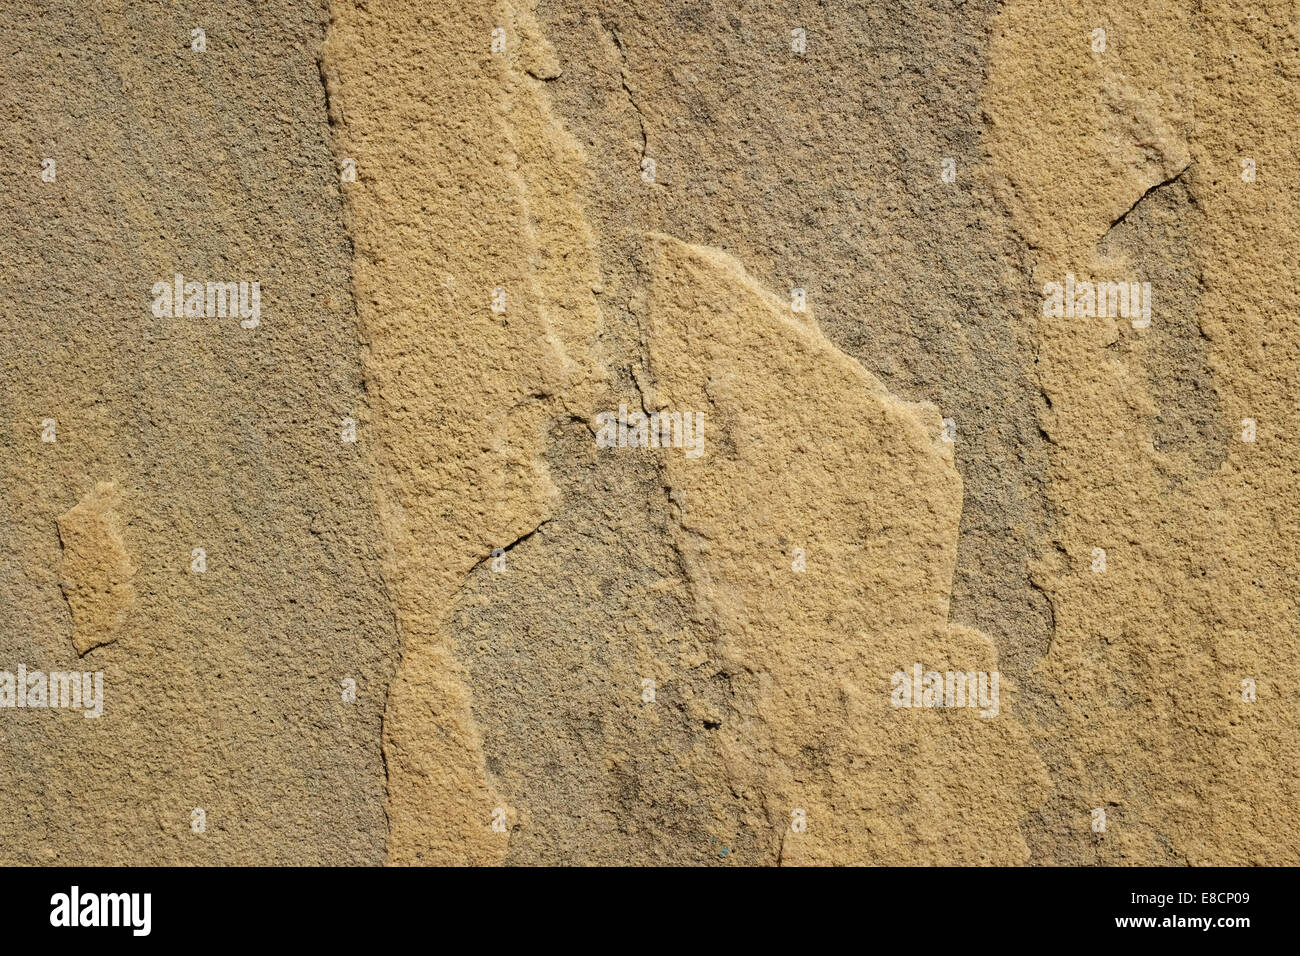 Grobe gelbem Sandstein Platte als abstrakte Hintergrundtextur Stockfoto